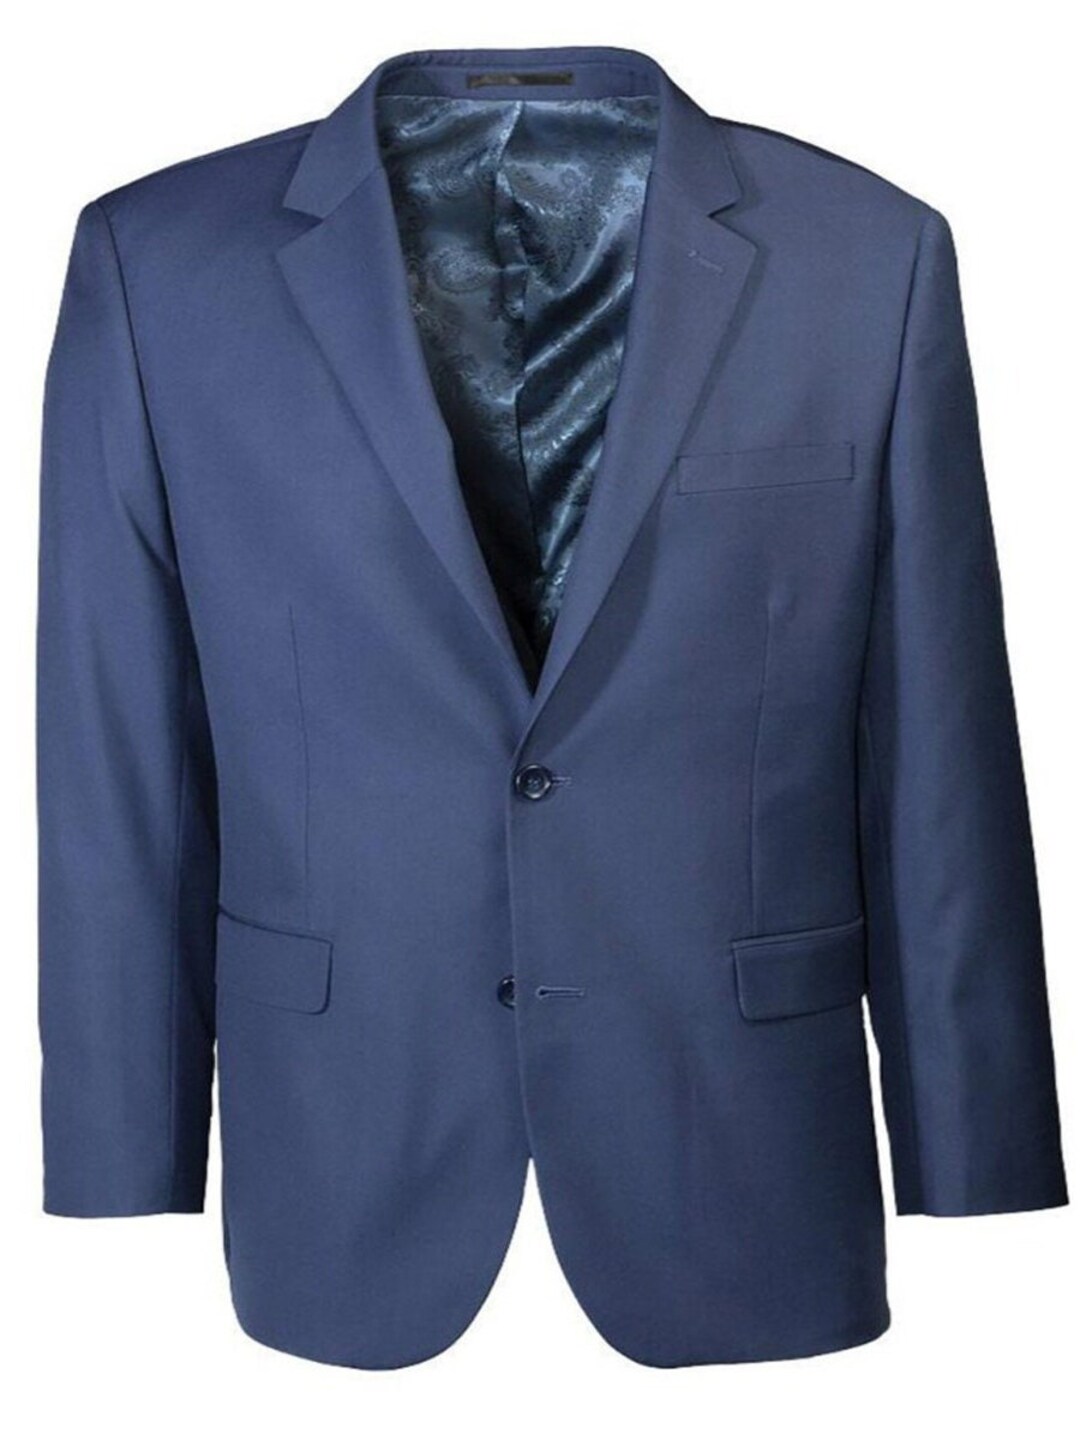 Men's Modern Fit Sapphire Blue Suit - Etsy